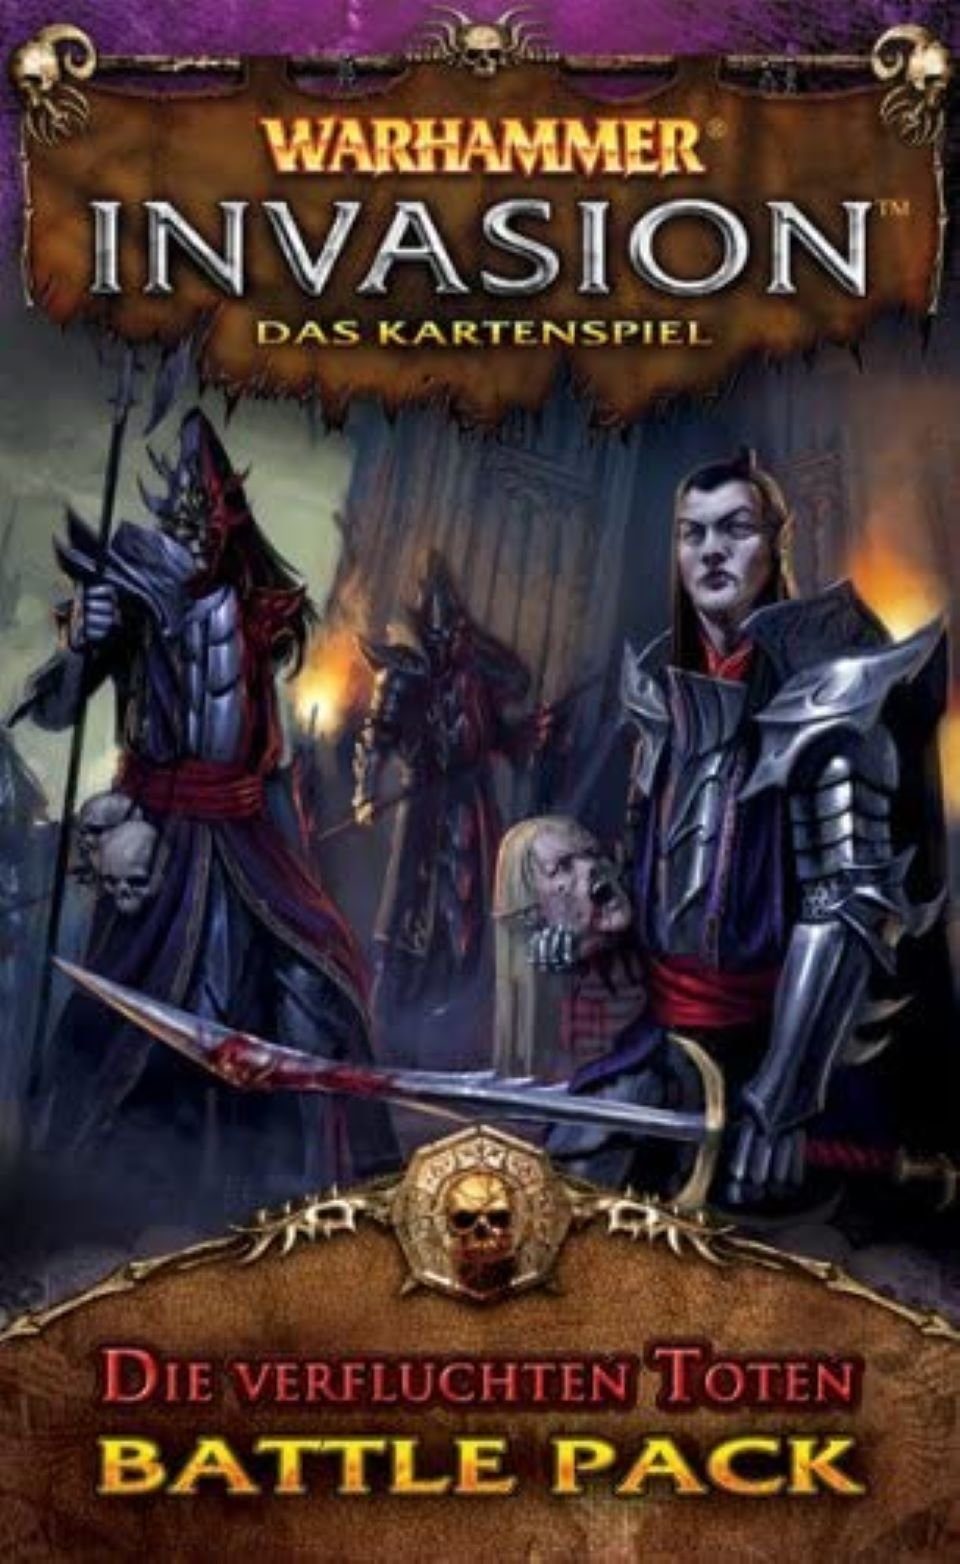 Heidelberger Spieleverlag Spiel, Warhammer Invasion, Erweiterung, Titel laut Ausführung